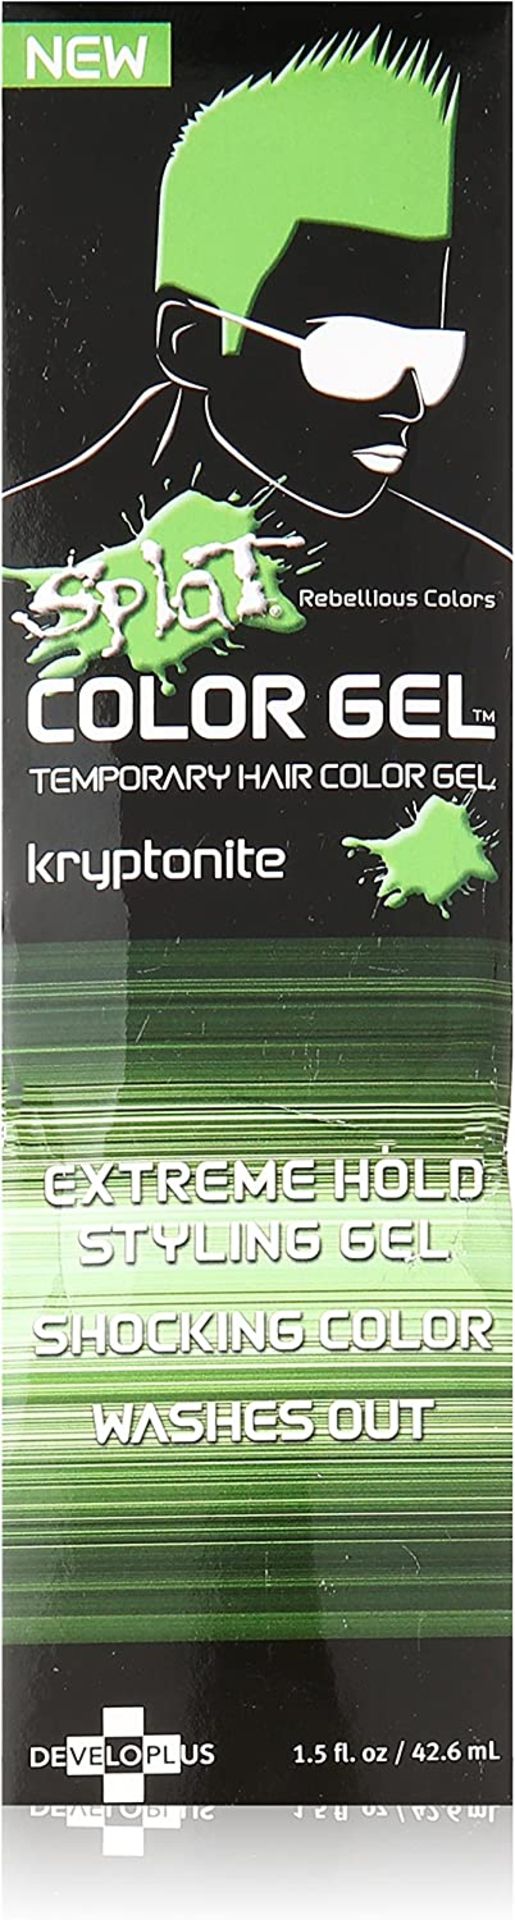 24 x Pink & Kryponite Splat Hair Dye RRP £13.85 ea - Image 2 of 2